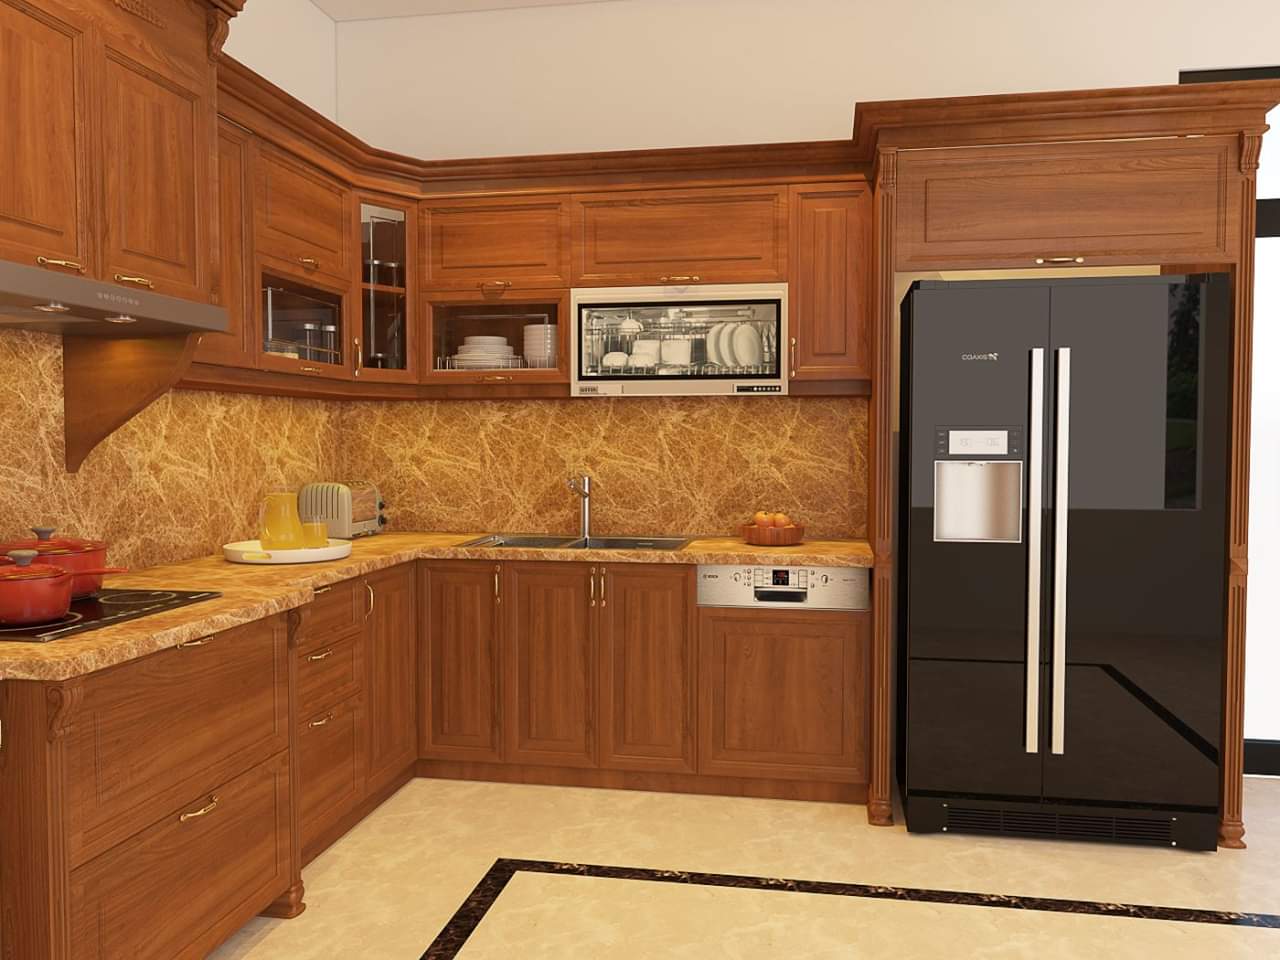 Tủ bếp gỗ gõ đỏ Pachy là sự kết hợp hoàn hảo giữa chất liệu gỗ cao cấp và thiết kế hiện đại. Với đường nét tinh tế và tỉ mỉ, tủ bếp Pachy sẽ mang đến cho bạn không gian bếp đẳng cấp và đầy ấn tượng. Bạn sẽ hoàn toàn chìm đắm trong không gian bếp sang trọng và thư giãn mỗi khi tham gia vào quá trình nấu ăn.